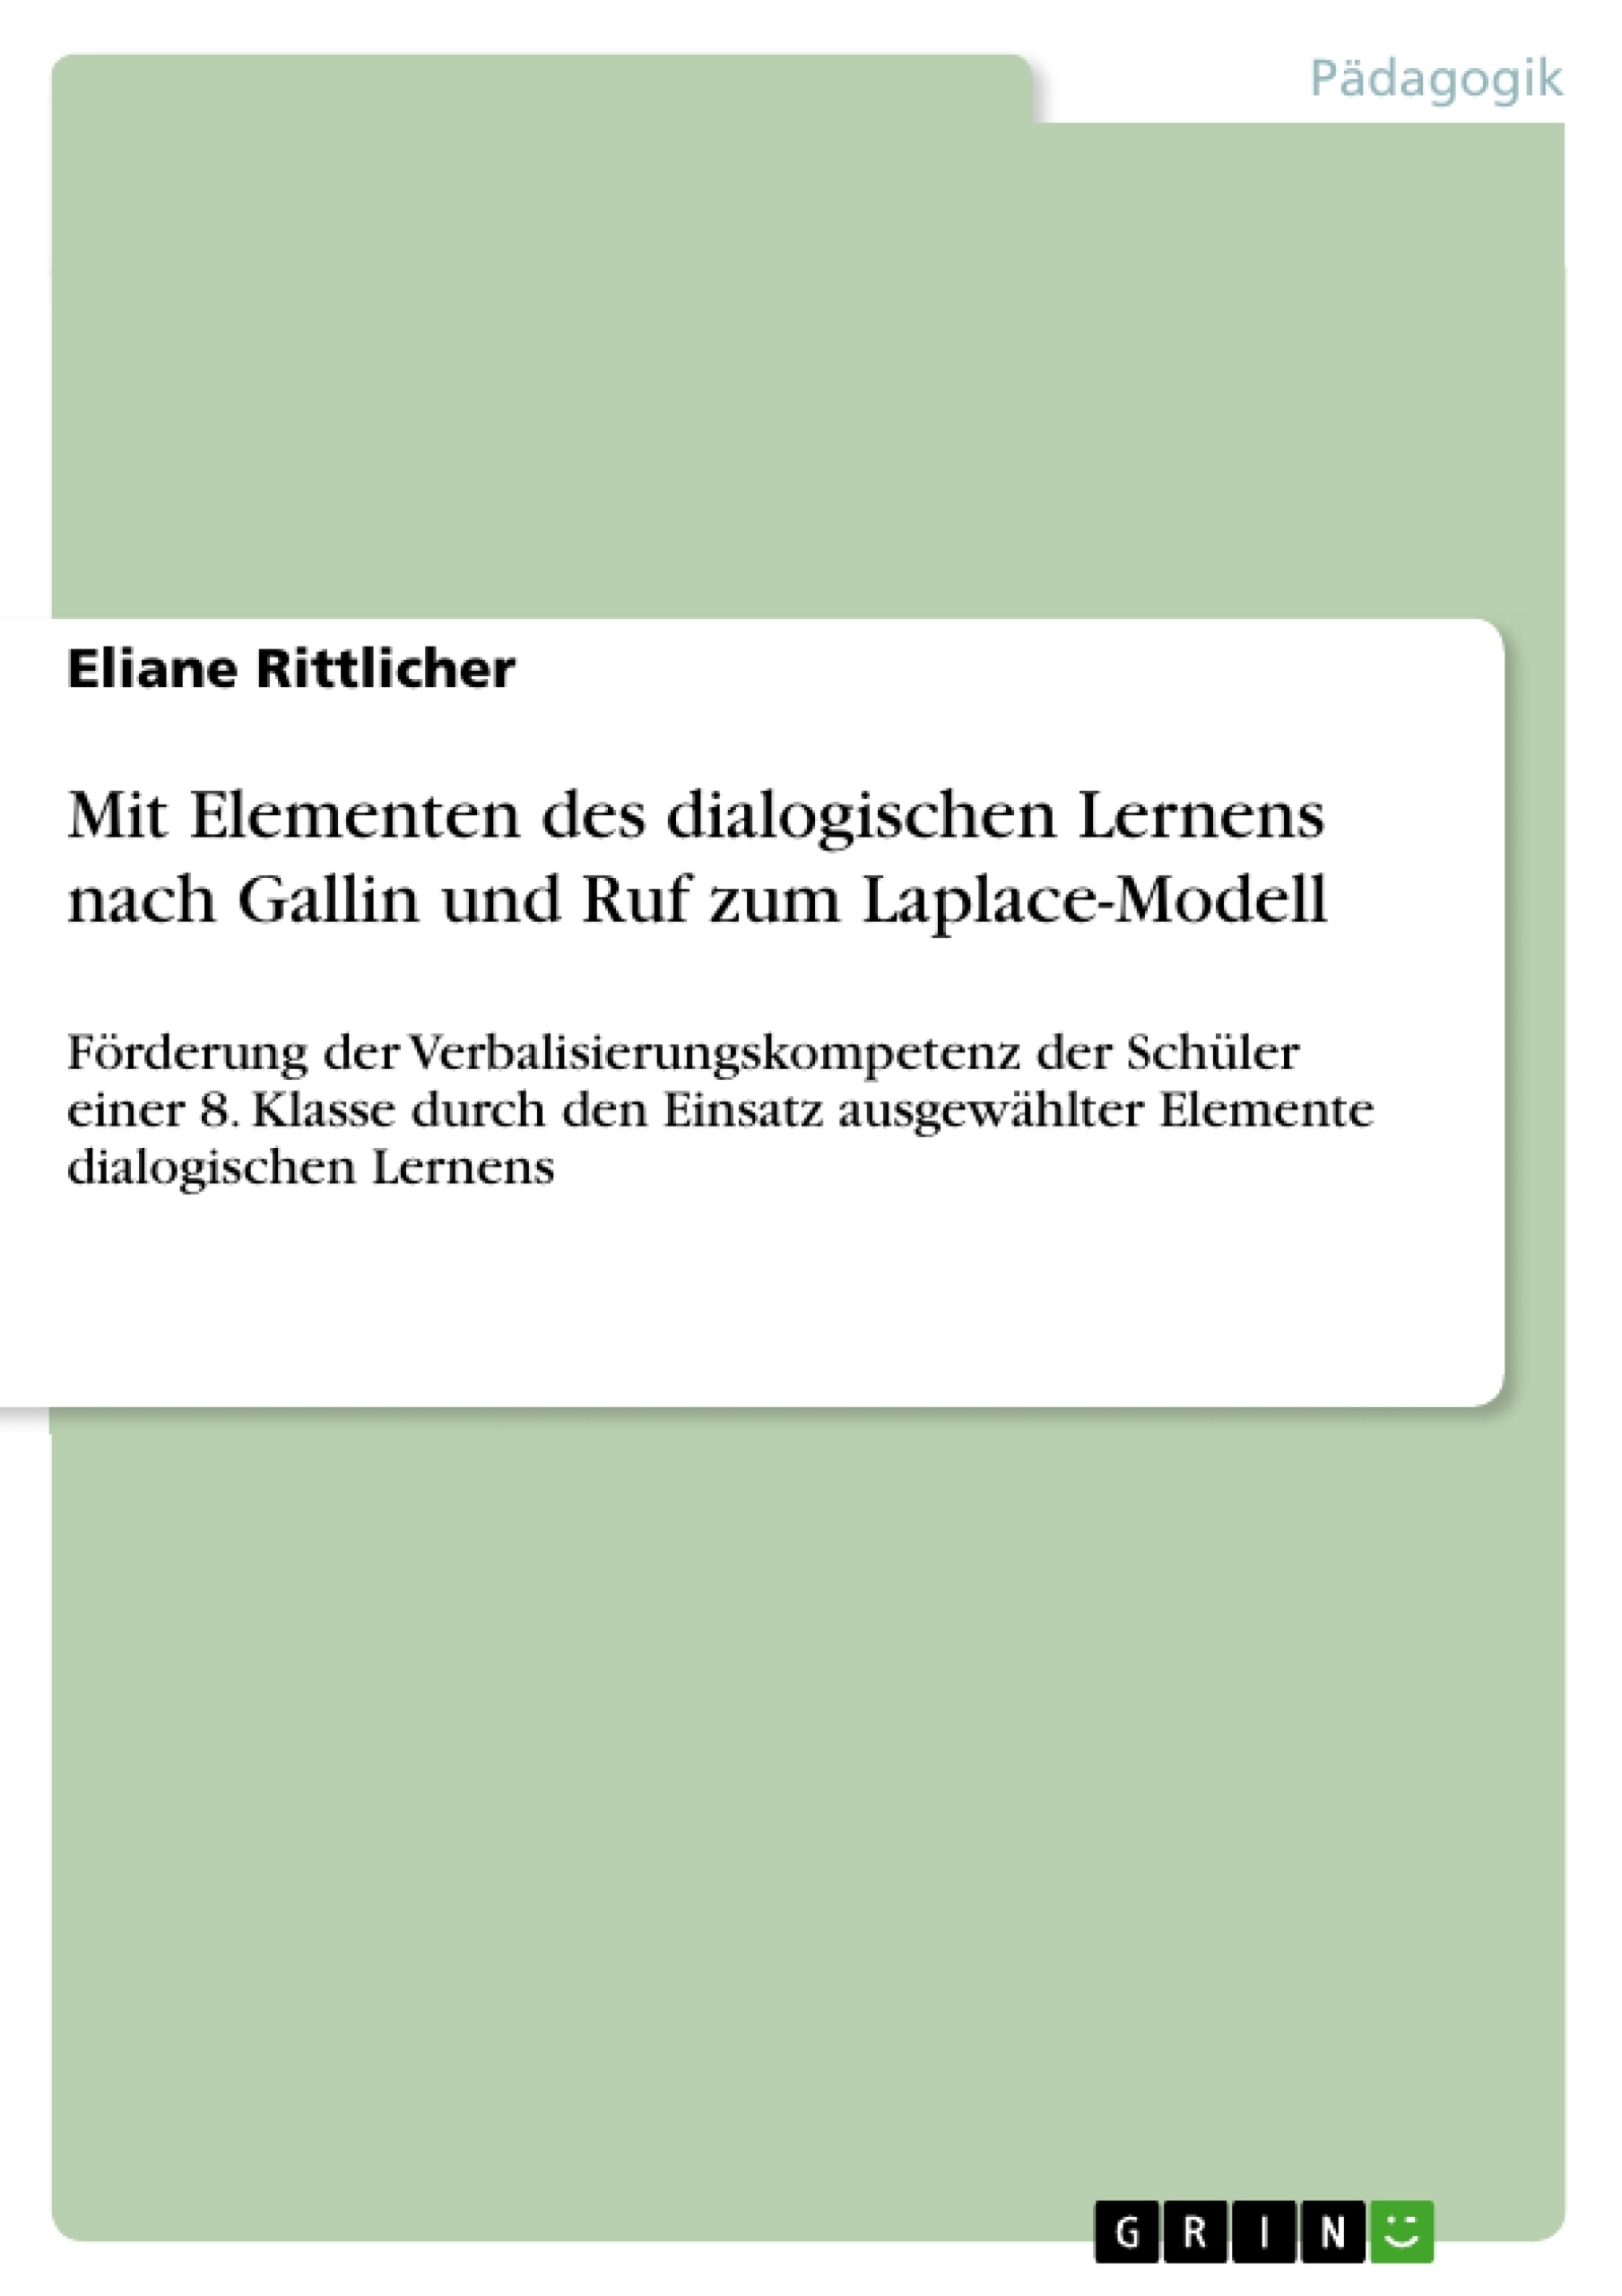 Title: Mit Elementen des dialogischen Lernens nach Gallin und Ruf zum Laplace-Modell